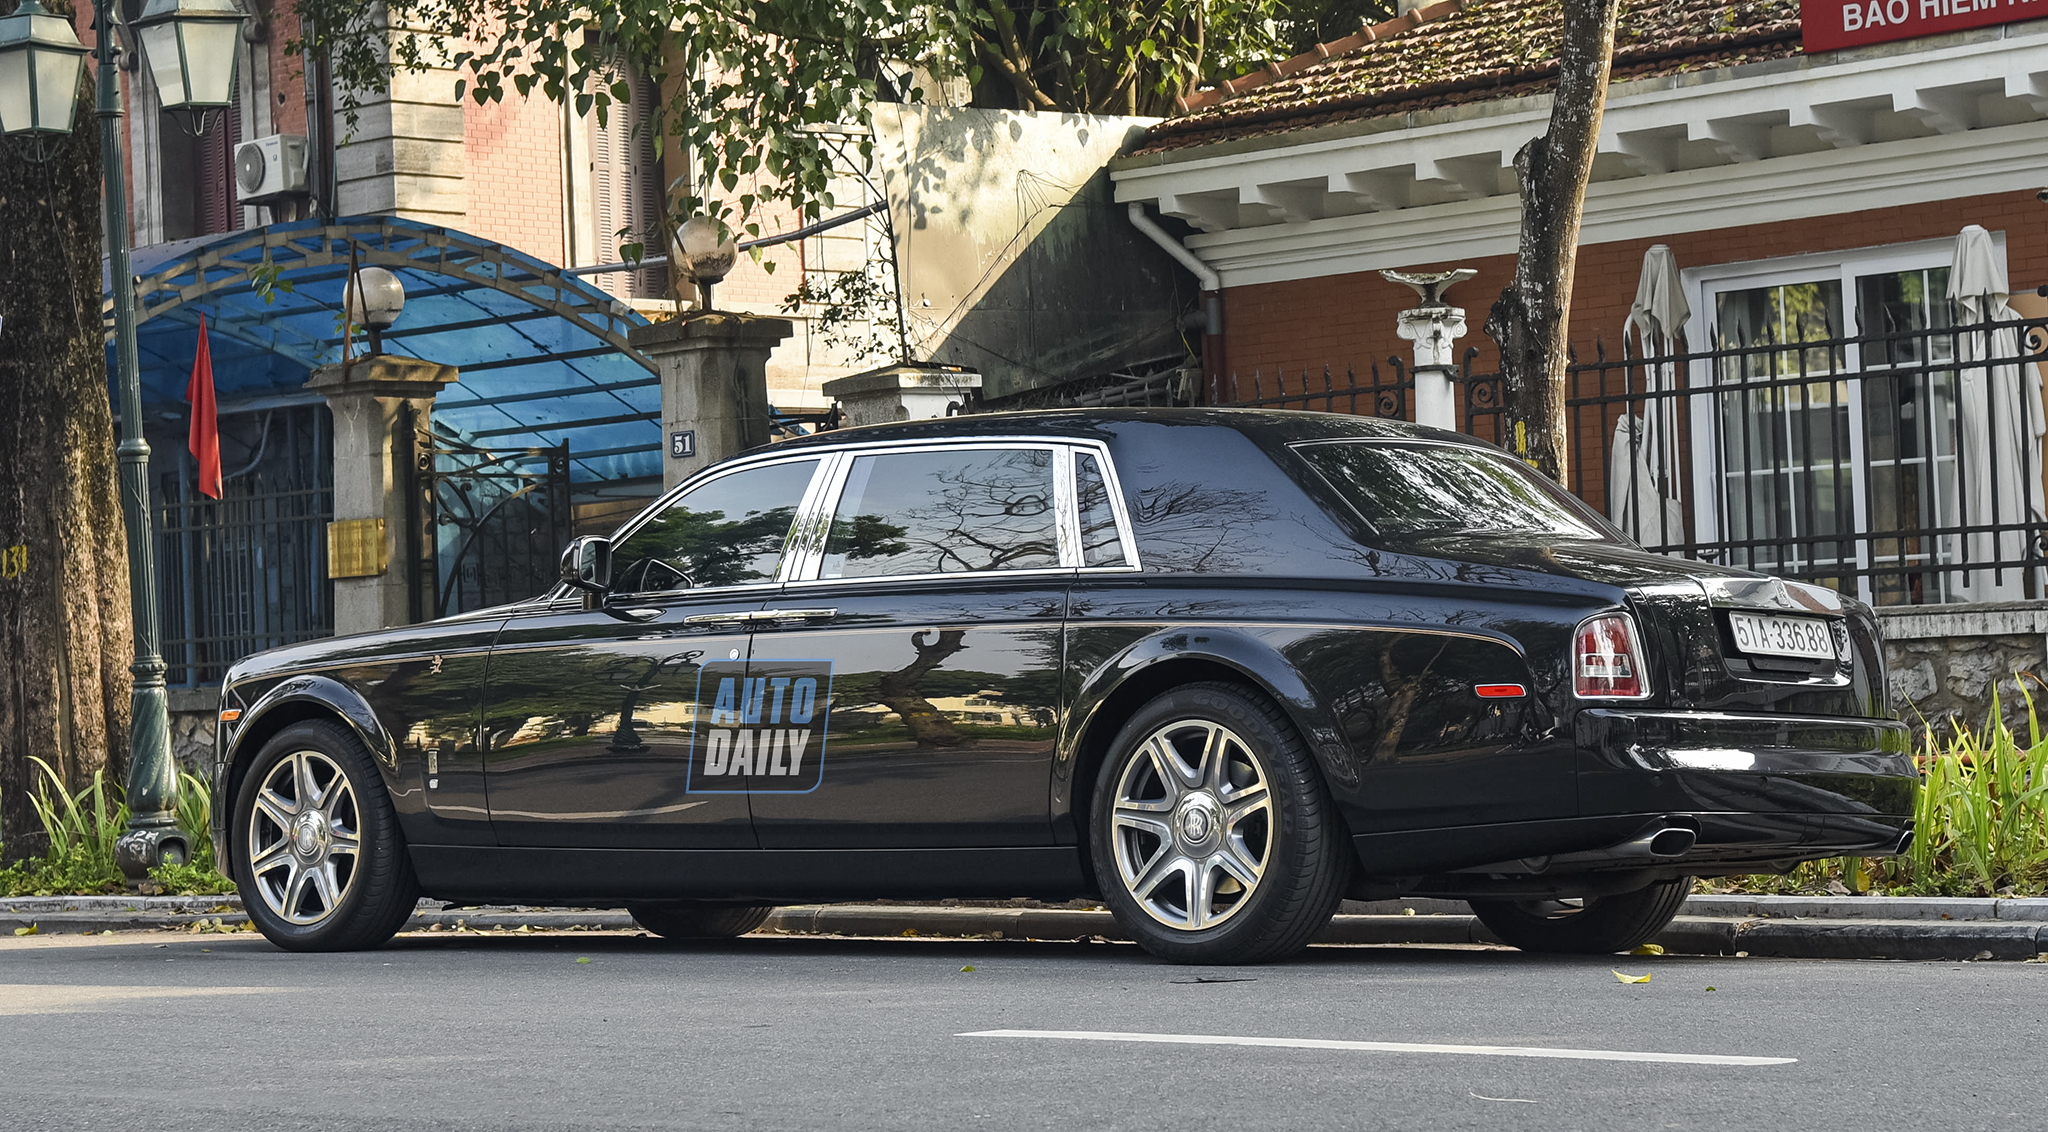 Rolls-Royce Phantom Rồng của 'Bầu' Kiên tái xuất, tròn 10 năm về Việt Nam adt-9150-copy.jpg